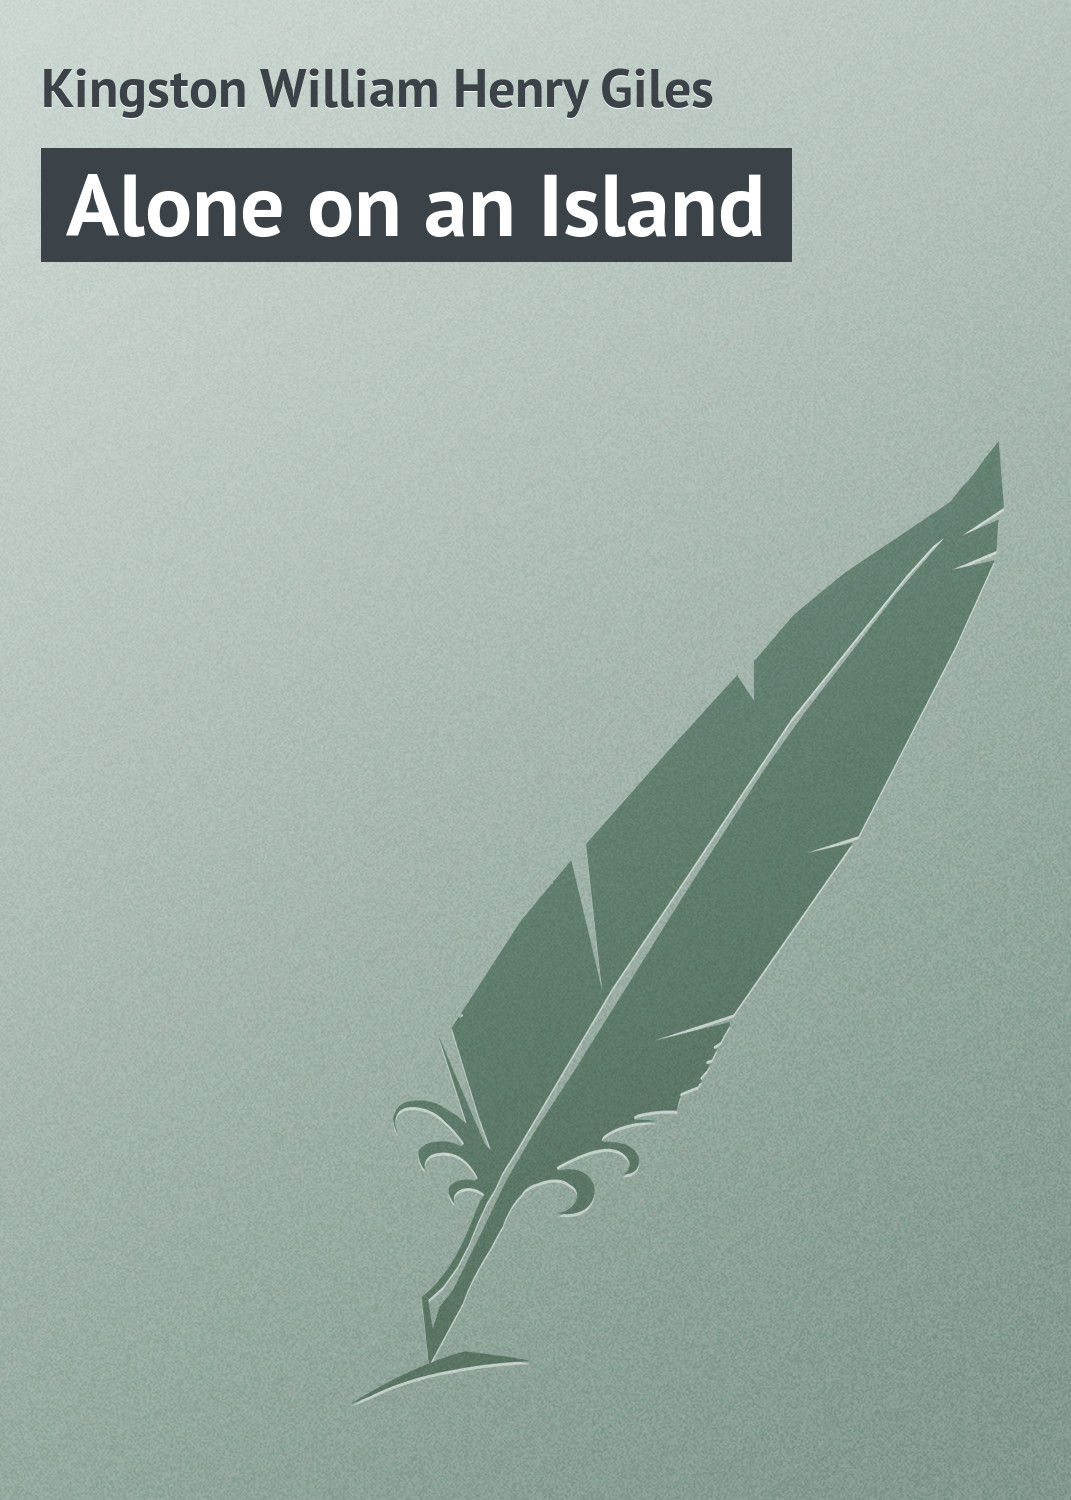 Книга Alone on an Island из серии , созданная William Kingston, может относится к жанру Зарубежная классика, Морские приключения. Стоимость электронной книги Alone on an Island с идентификатором 23164563 составляет 5.99 руб.